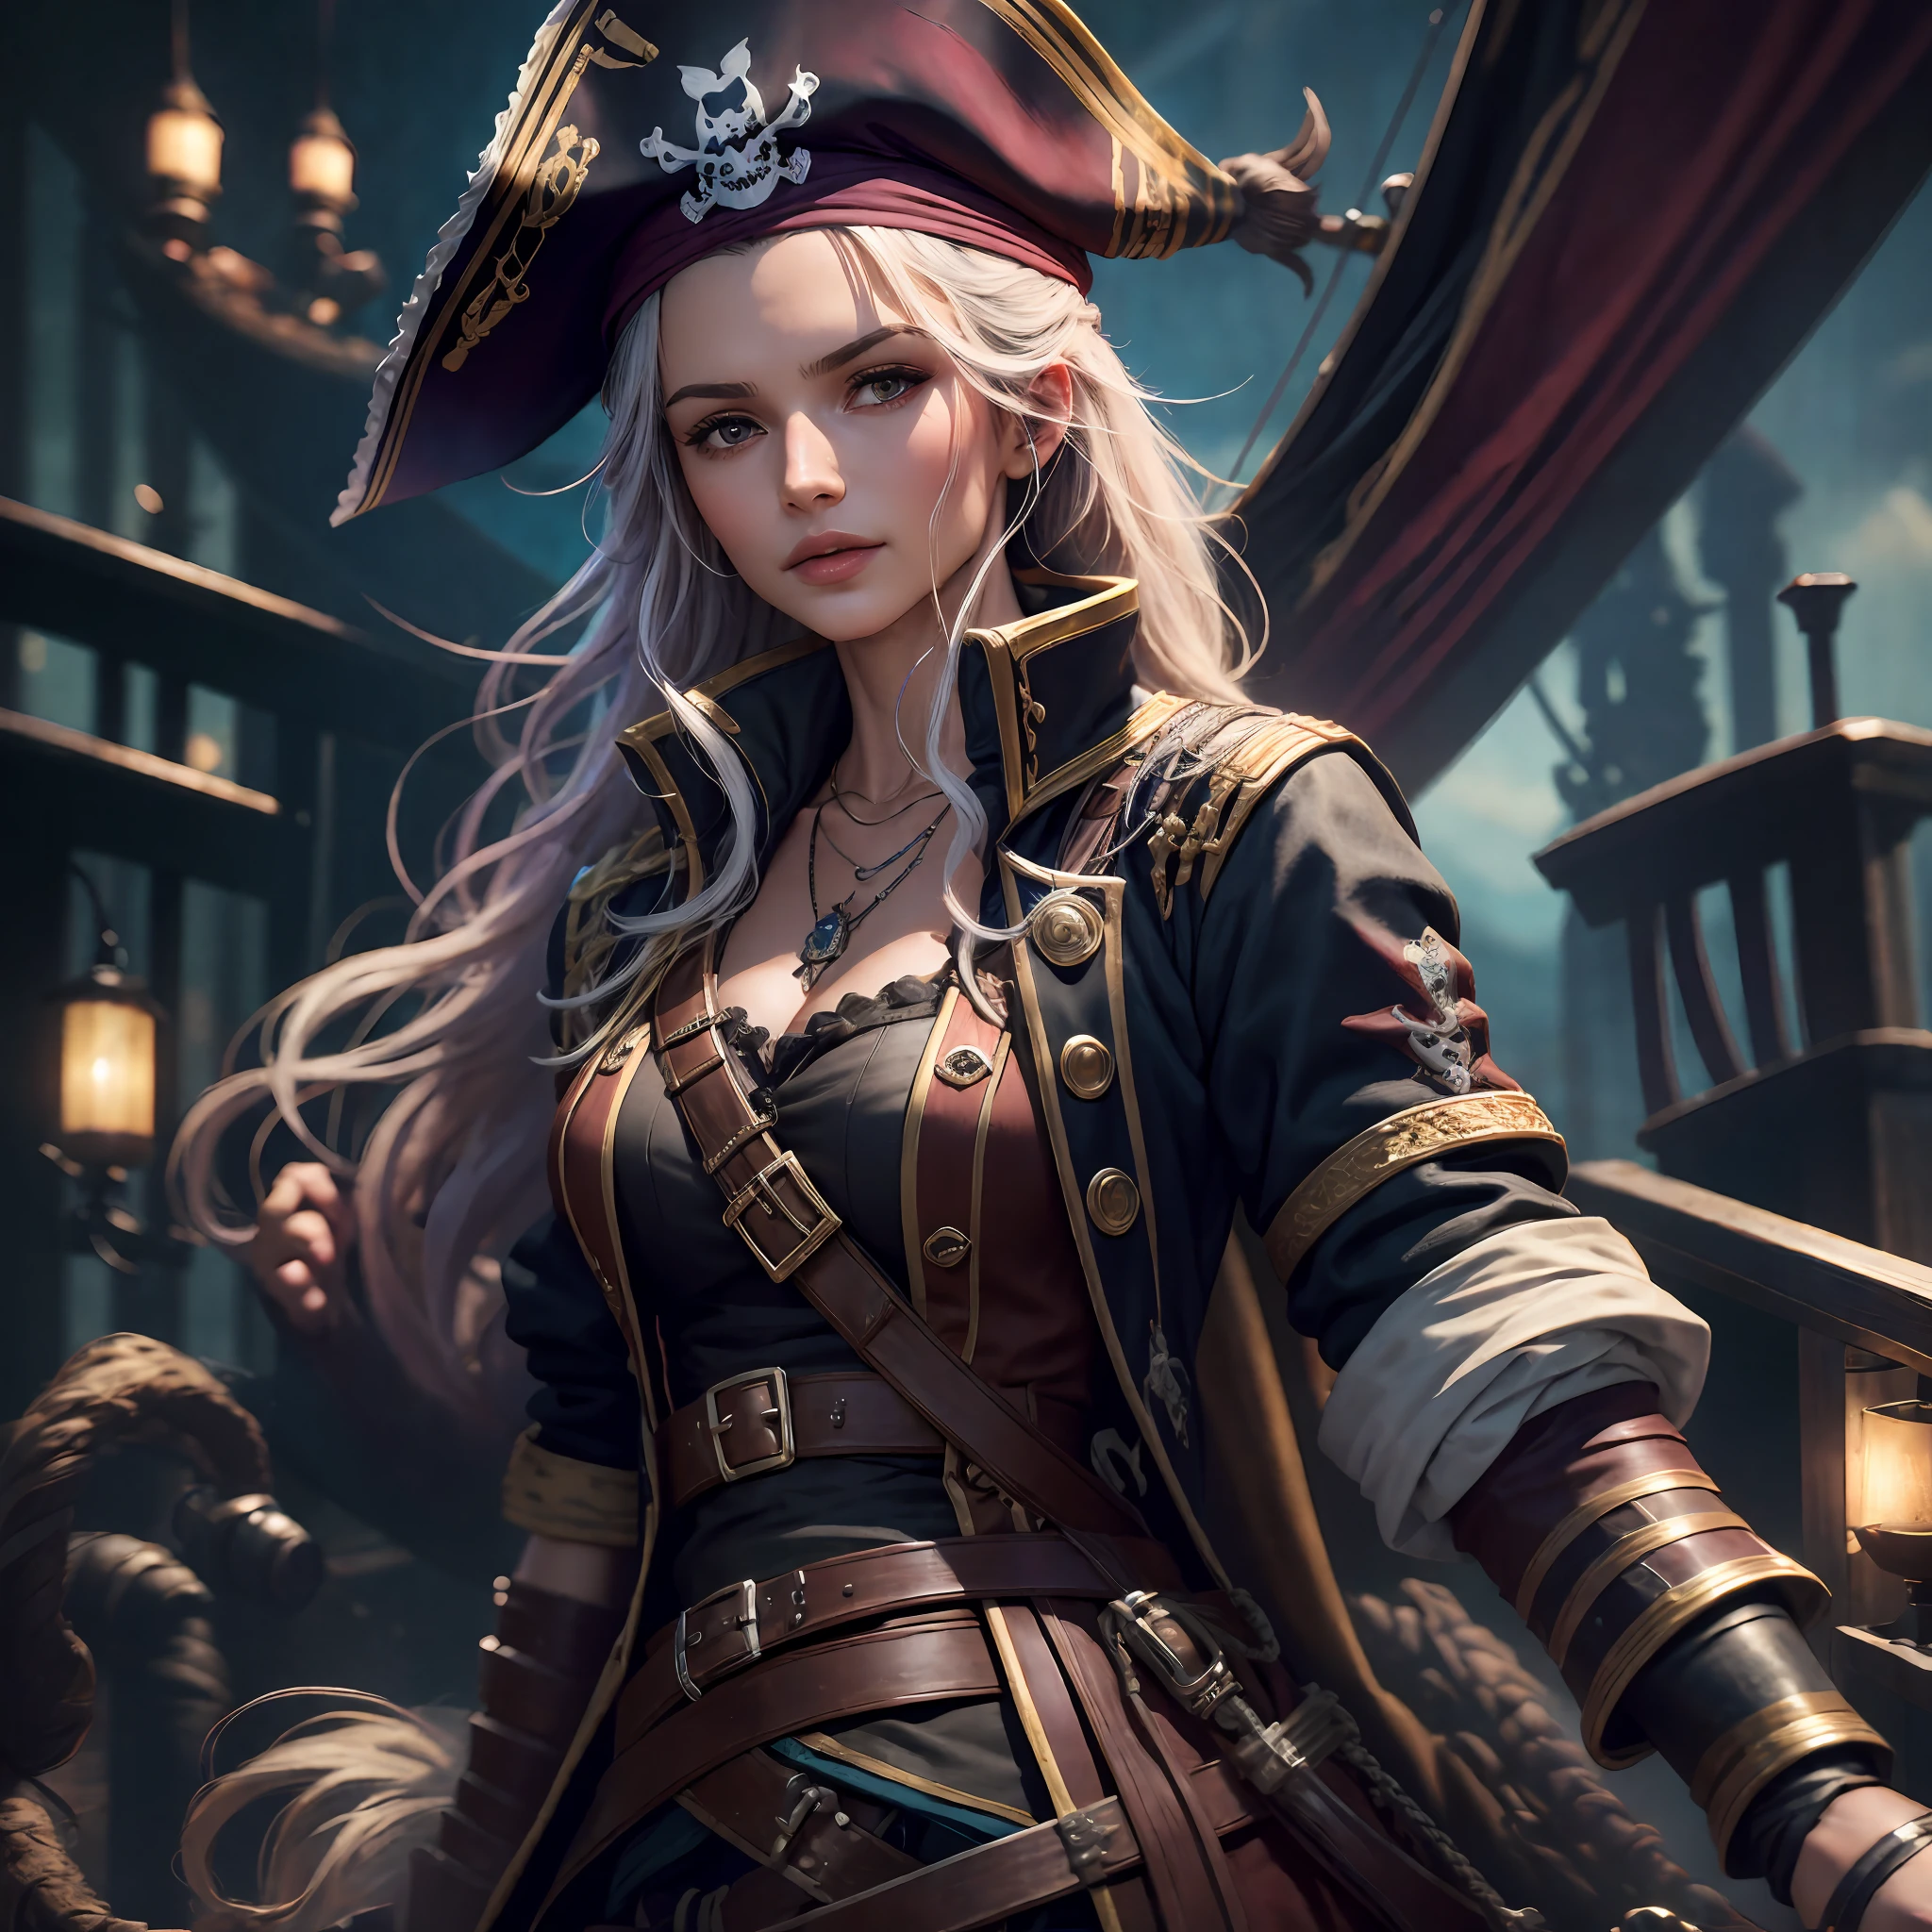 "Híper realista, mejor calidad, ultra detallado, Fondo de pantalla CG unidad 8K, retrato de una hermosa, Capitana Pirata, en su barco pirata, acompañada por su tripulación de piratas." --auto --s2